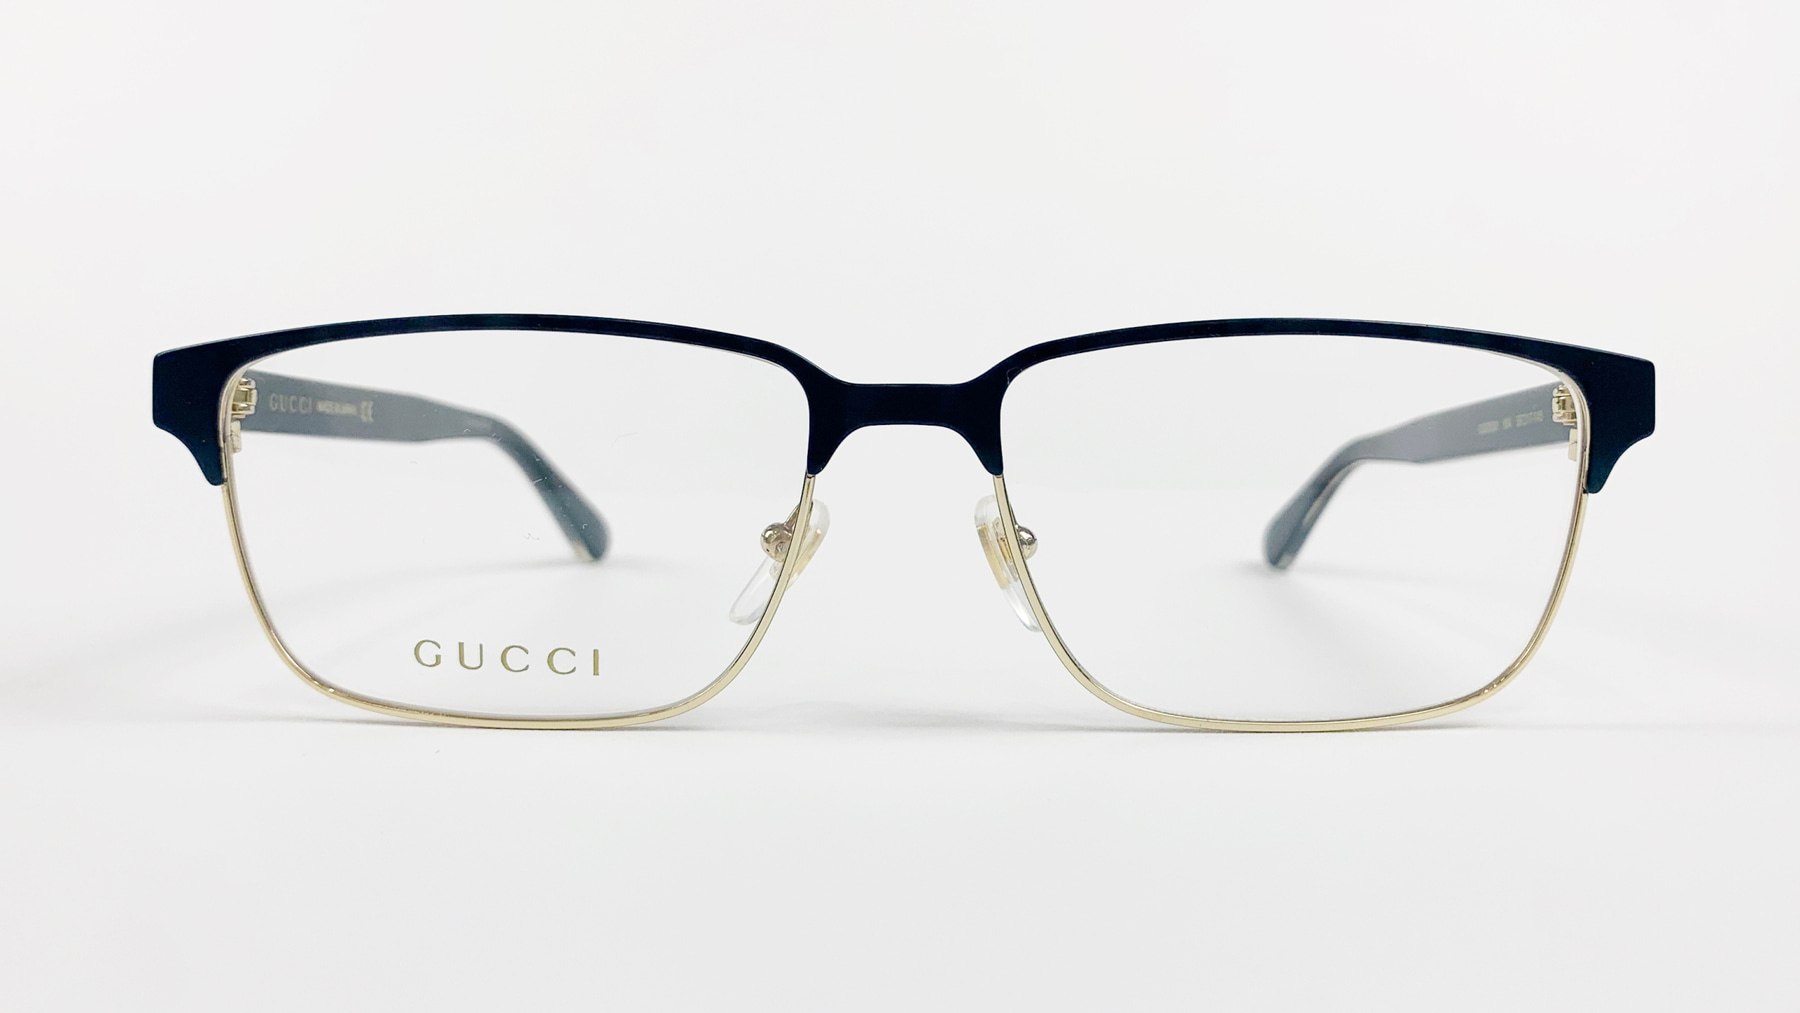 GUCCI GG0383O, Korean glasses, sunglasses, eyeglasses, glasses